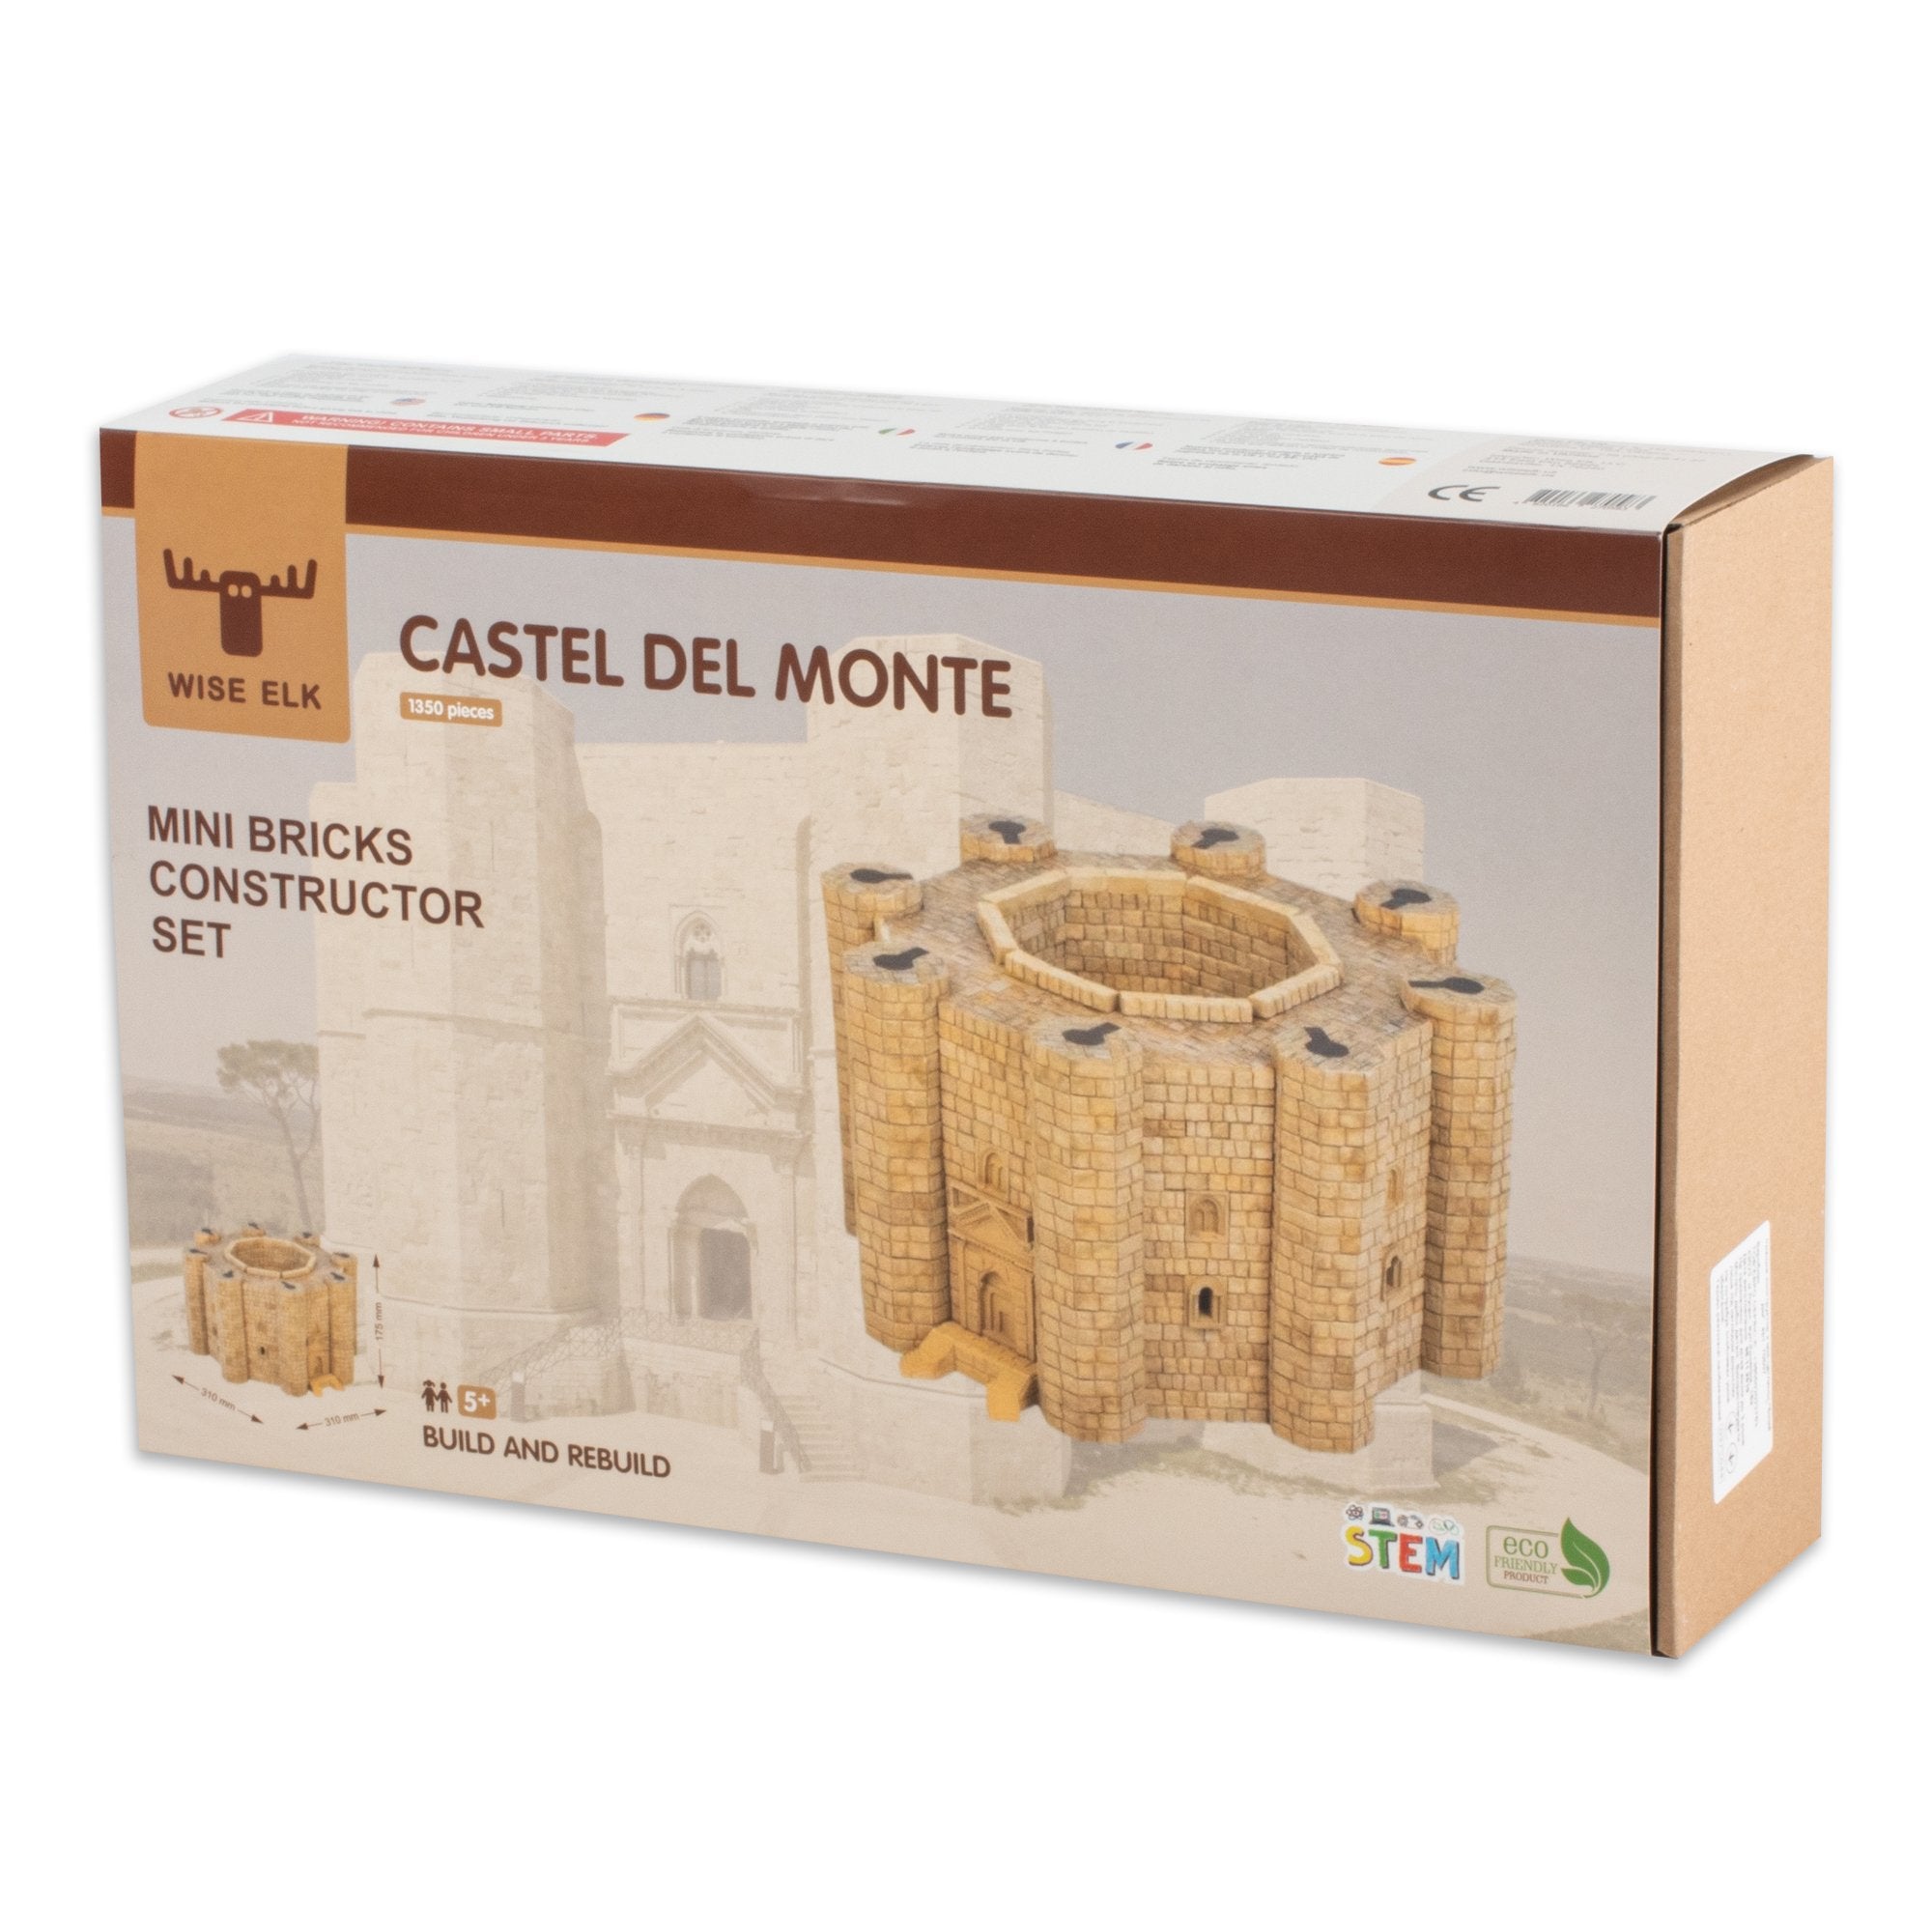 Wise Elk™ Castel del Monte | 510 pcs.